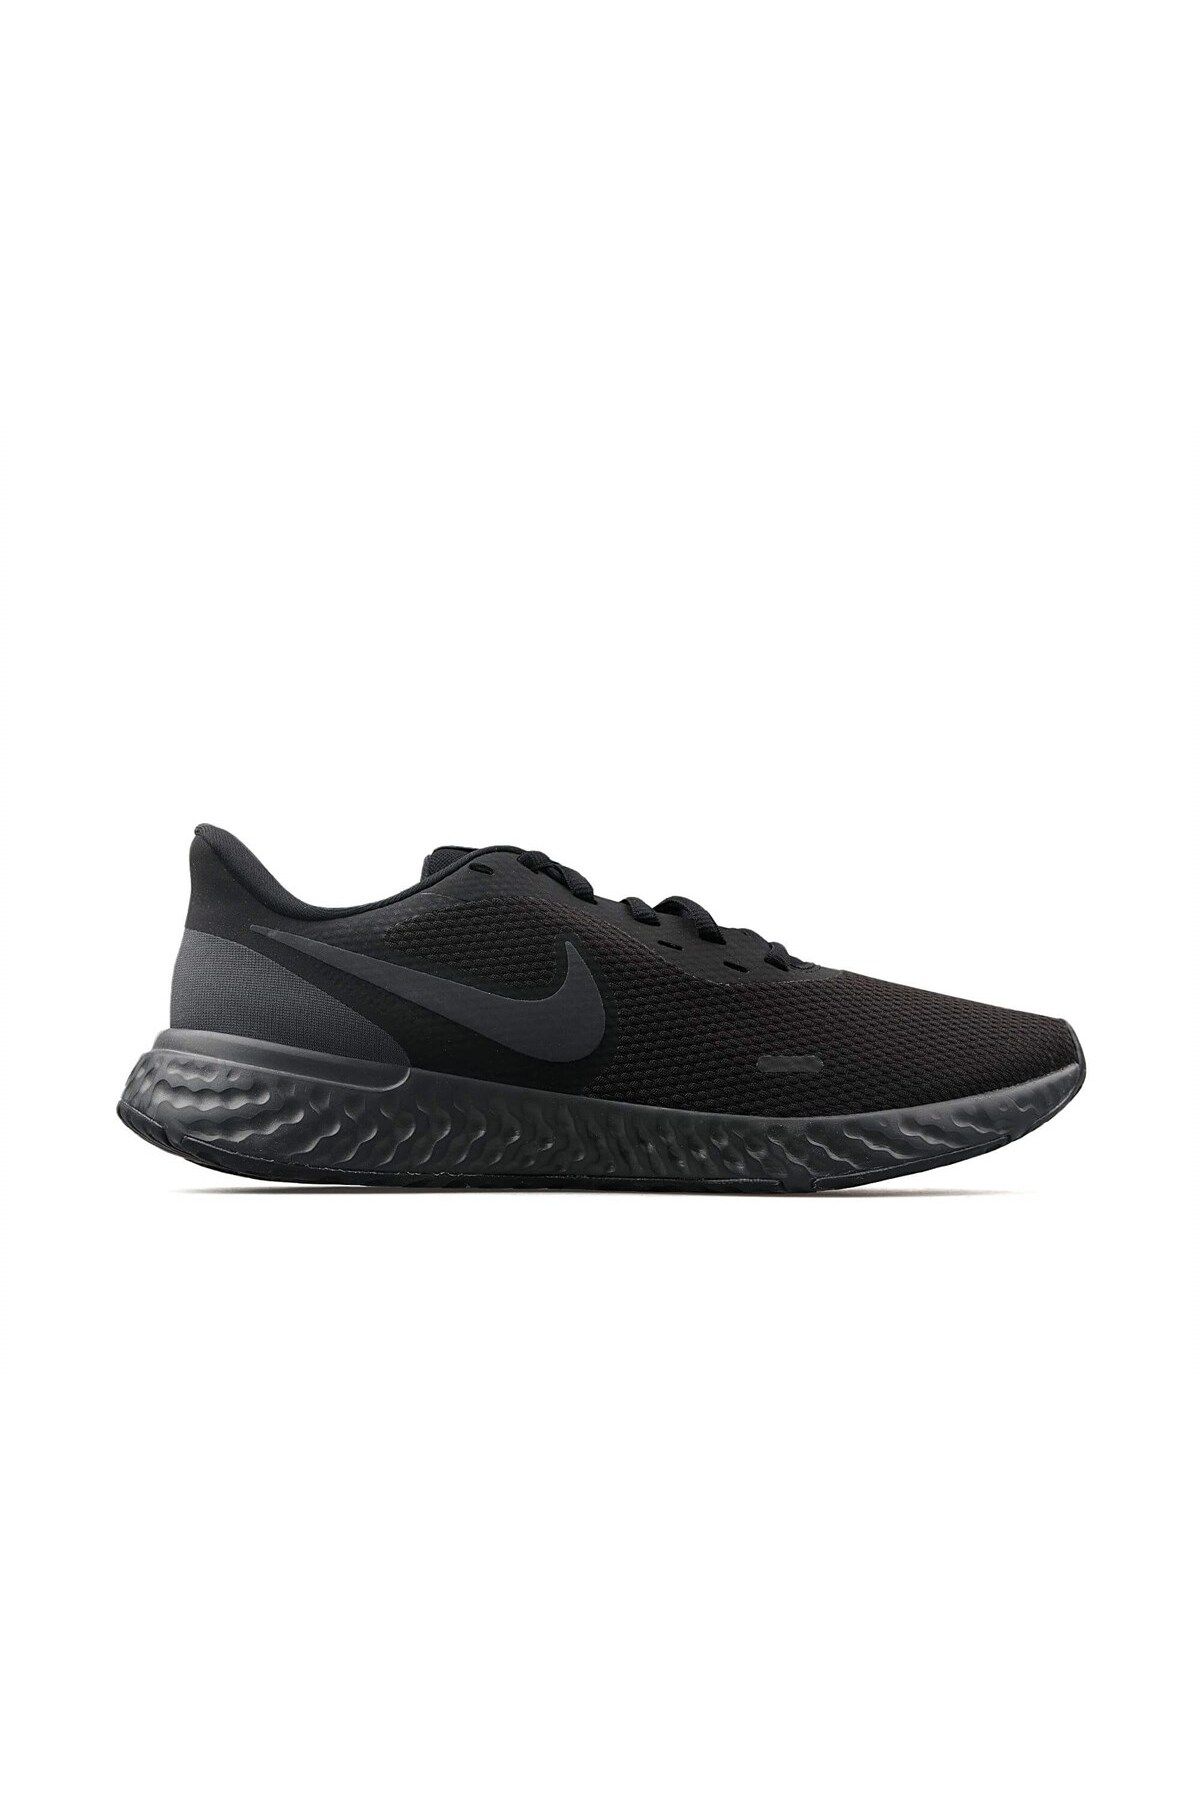 Nike Revolutıon 5 Erkek Günlük Ayakkabı Bq3204-001